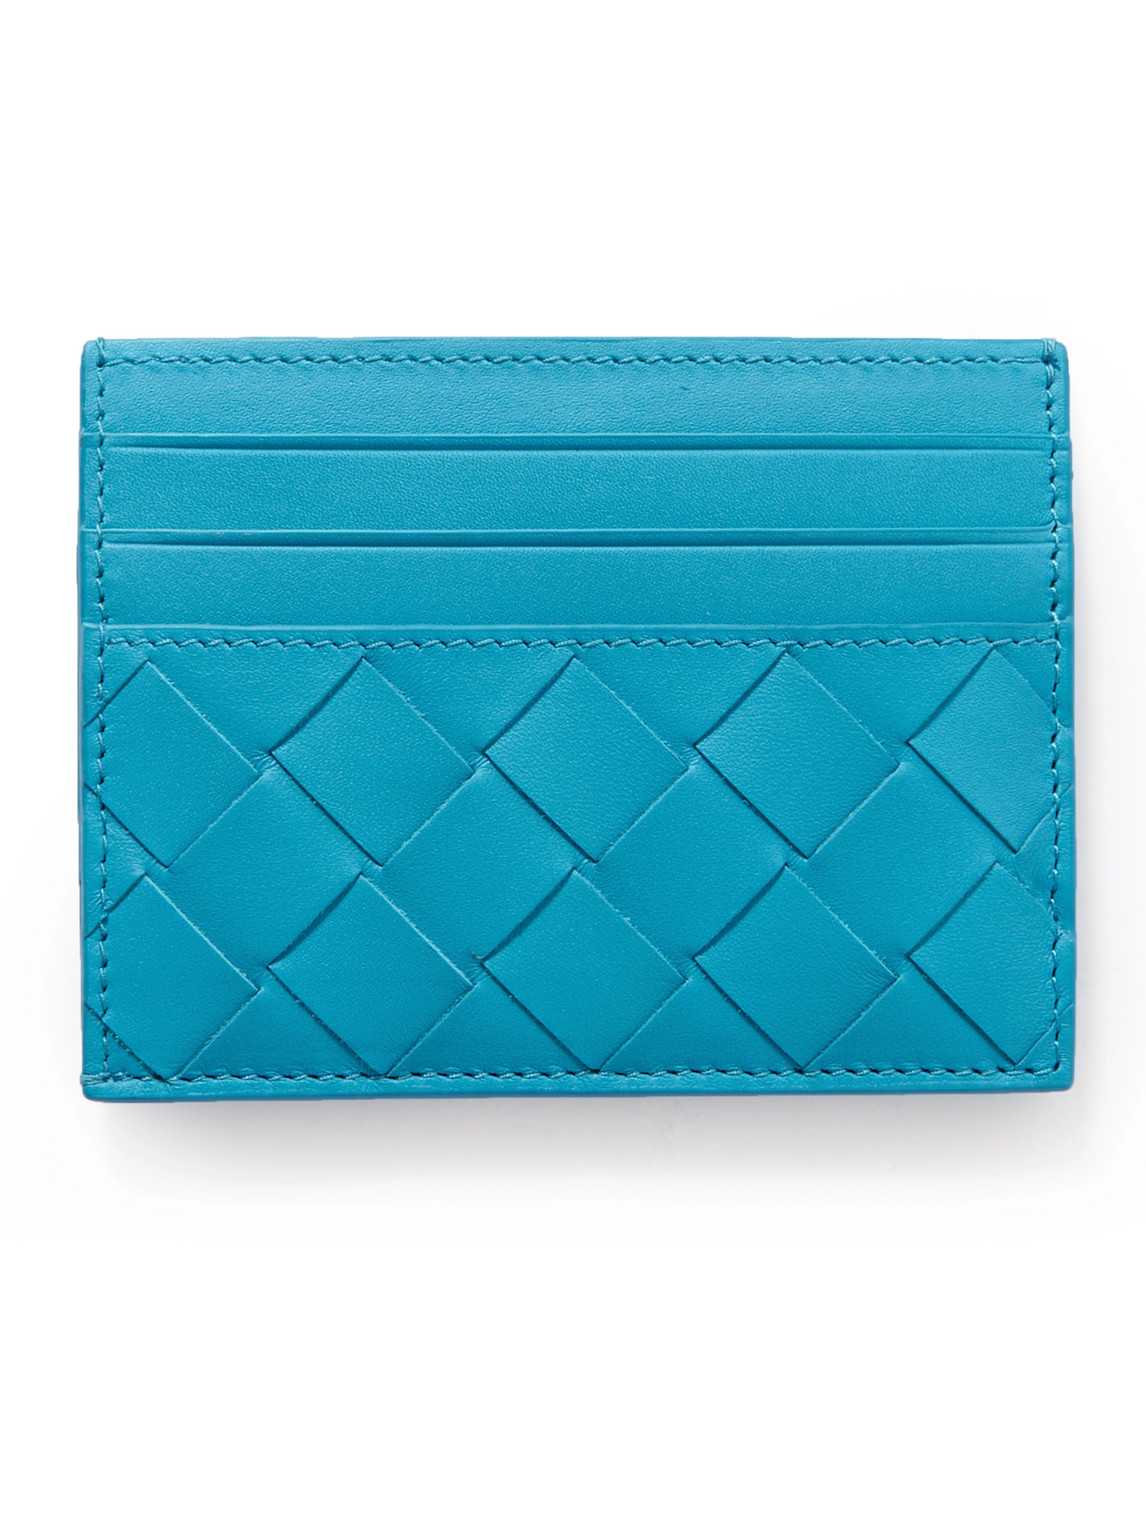 Bottega Veneta Intrecciato Leather Cardholder In Blue